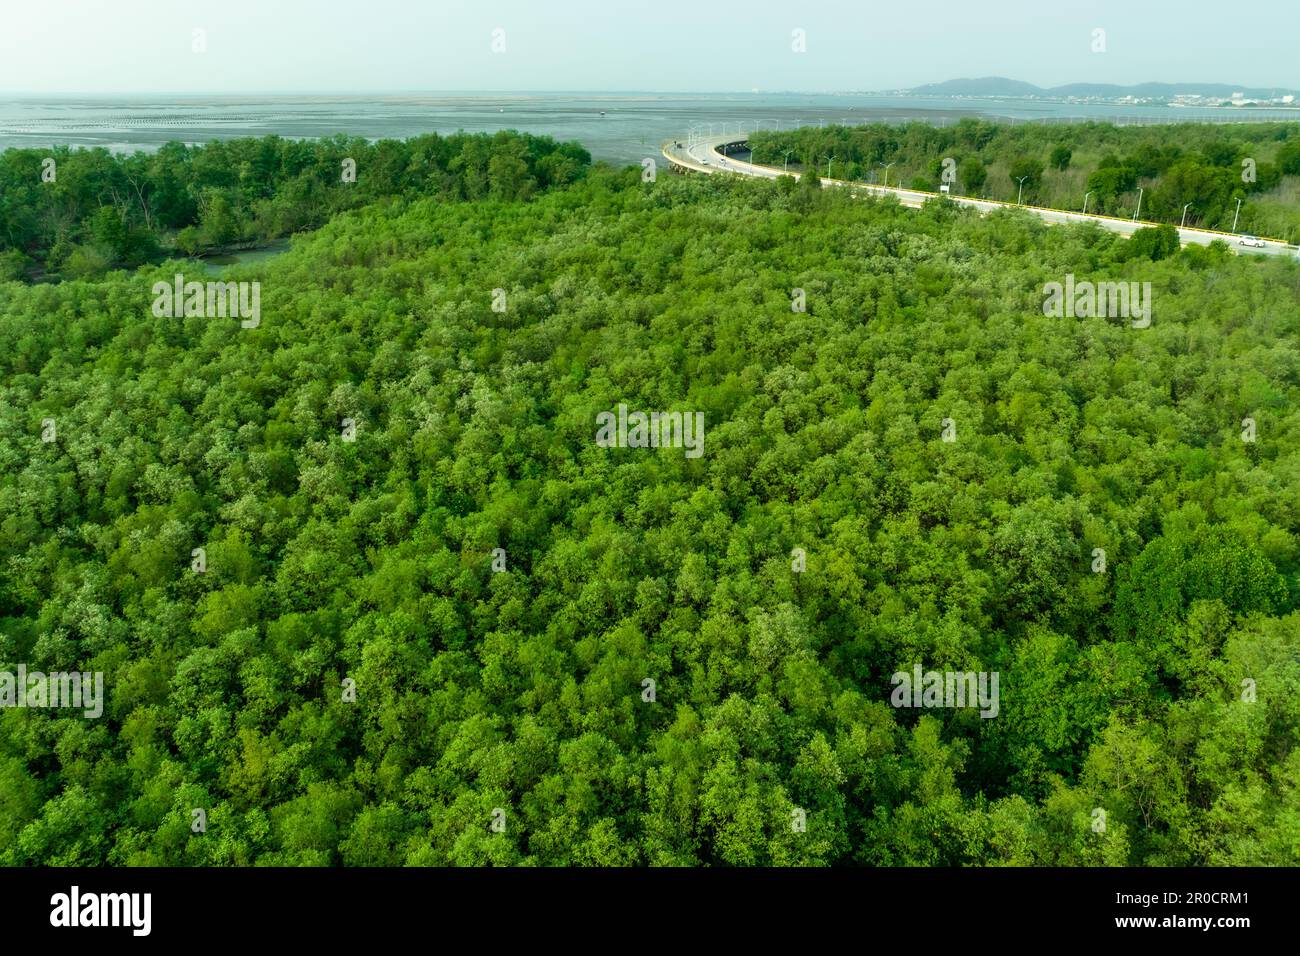 La foresta di mangrovie verdi cattura l'anidride carbonica. Emissioni zero nette. Le mangrovie catturano CO2 km dall'atmosfera. Ecosistemi di carbonio blu. Vista aerea mangrovia Foto Stock